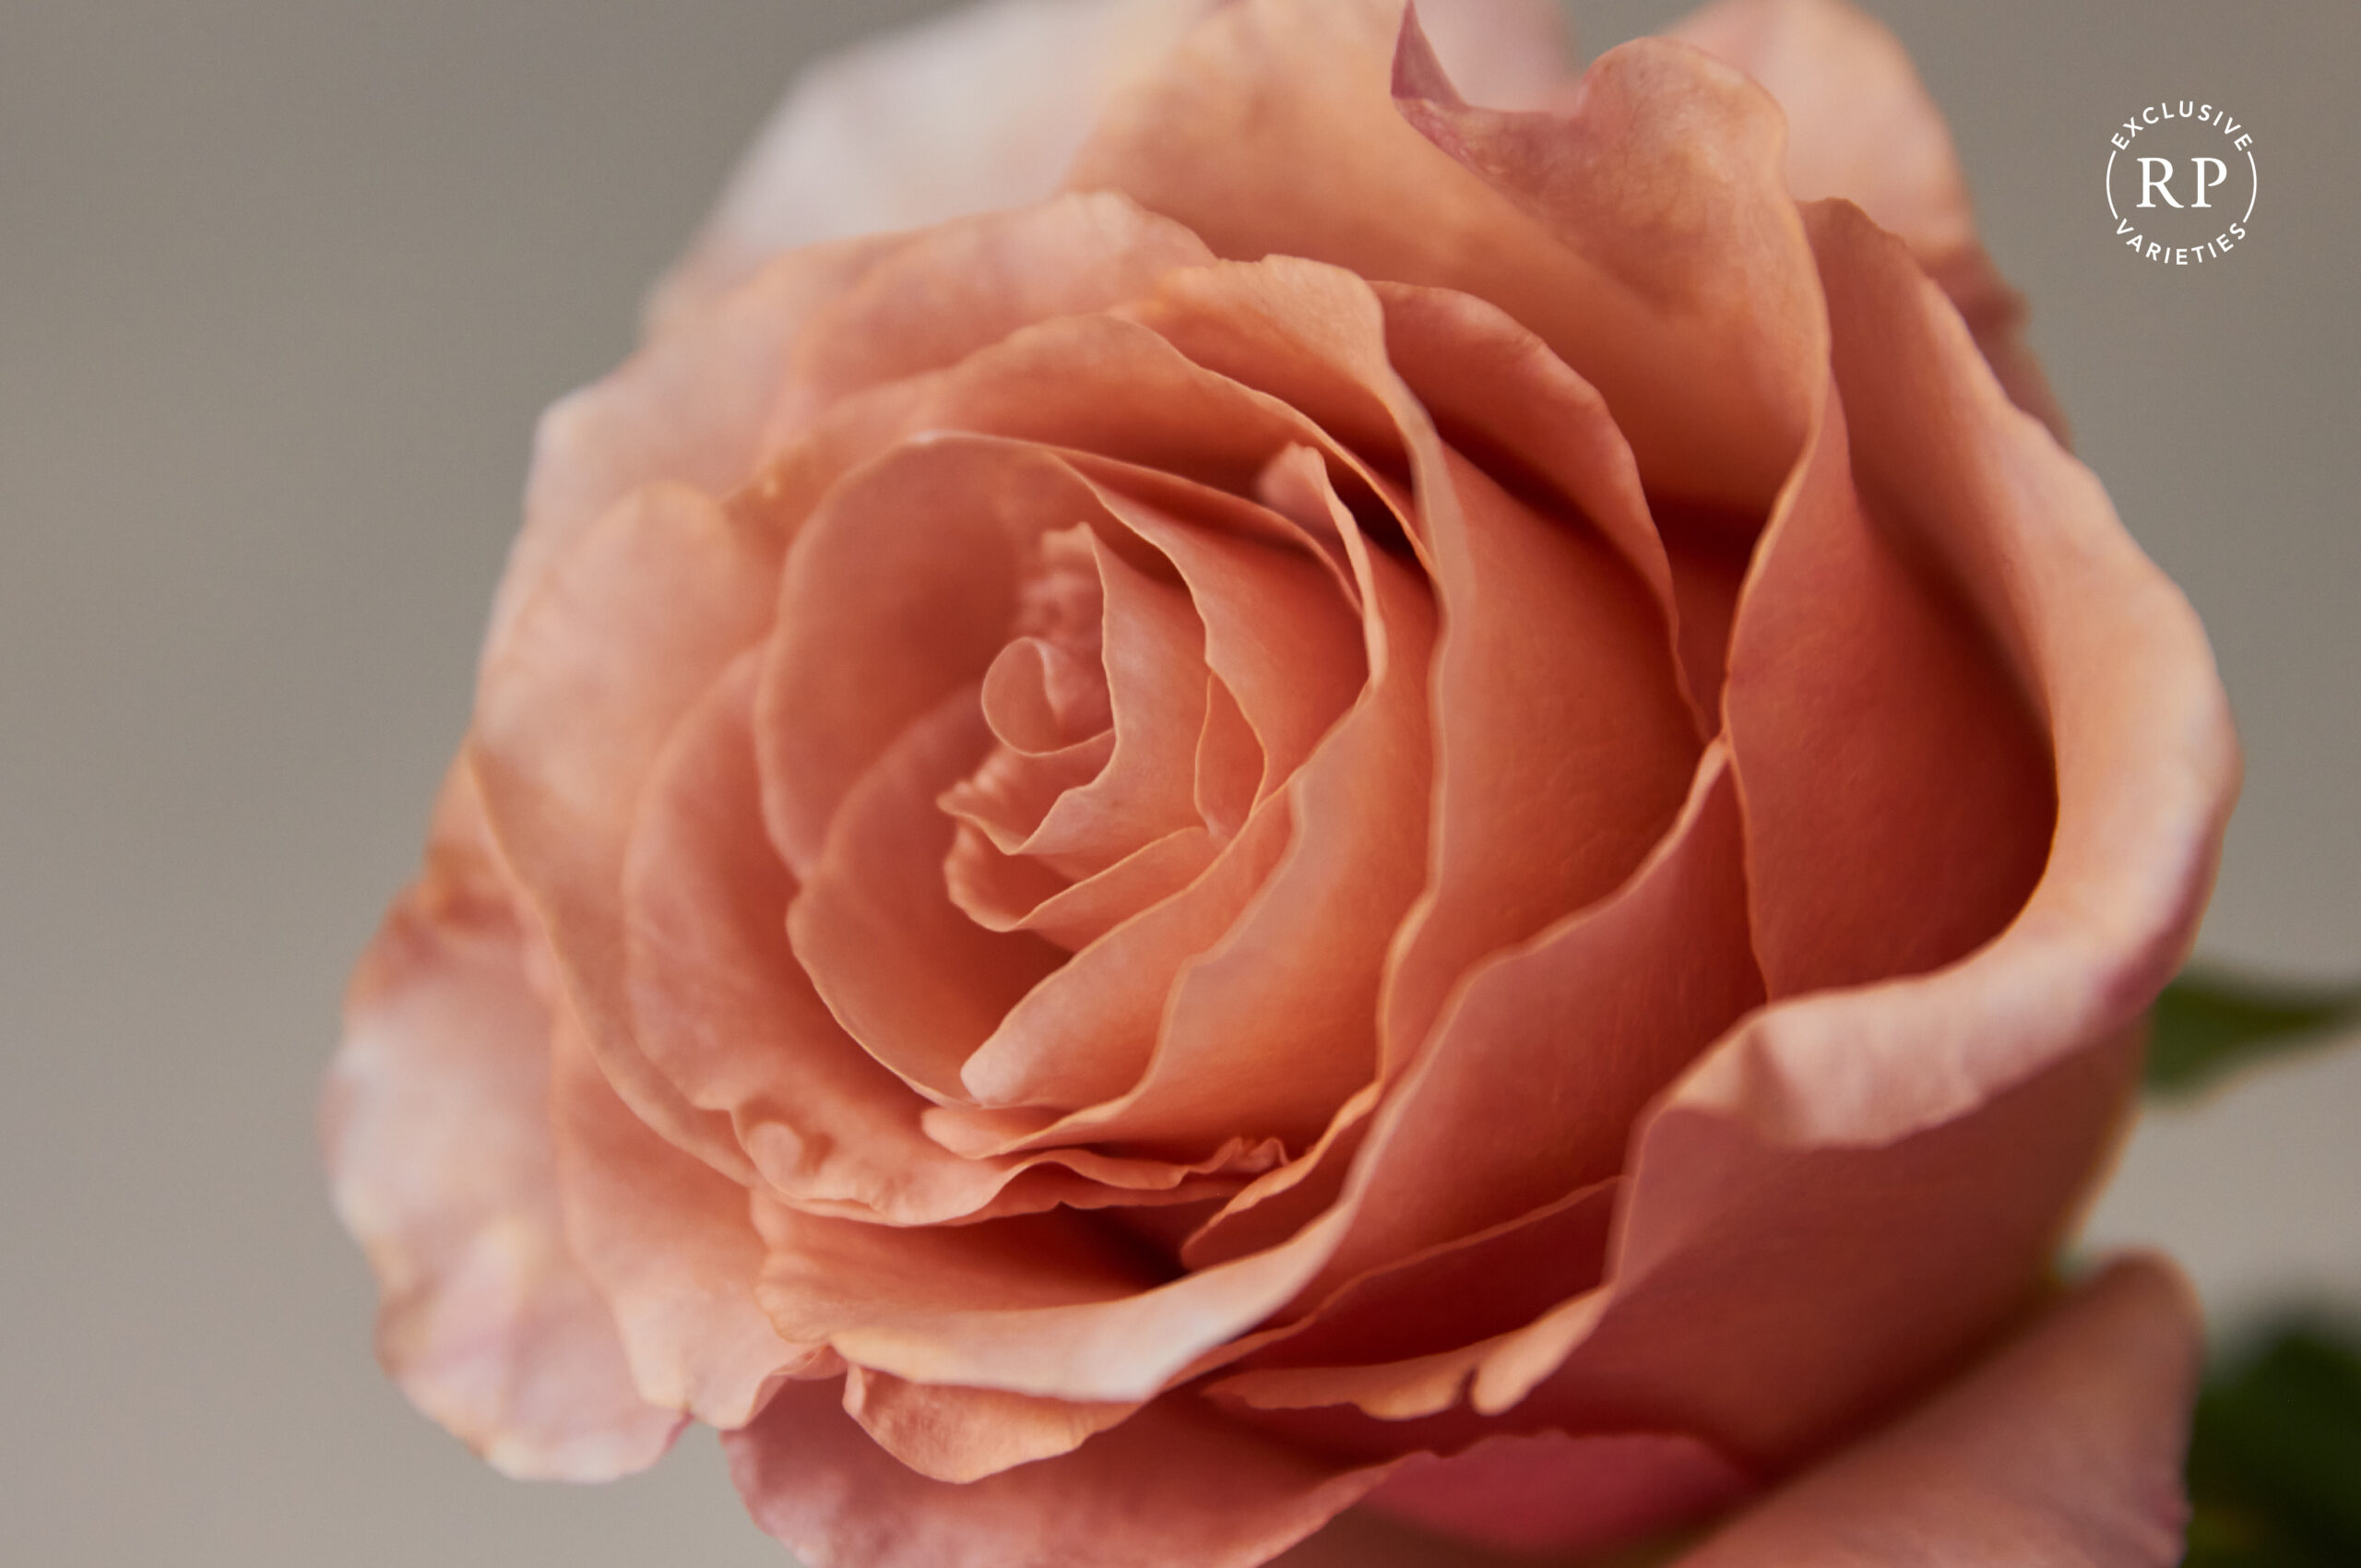 Rosa rose naked